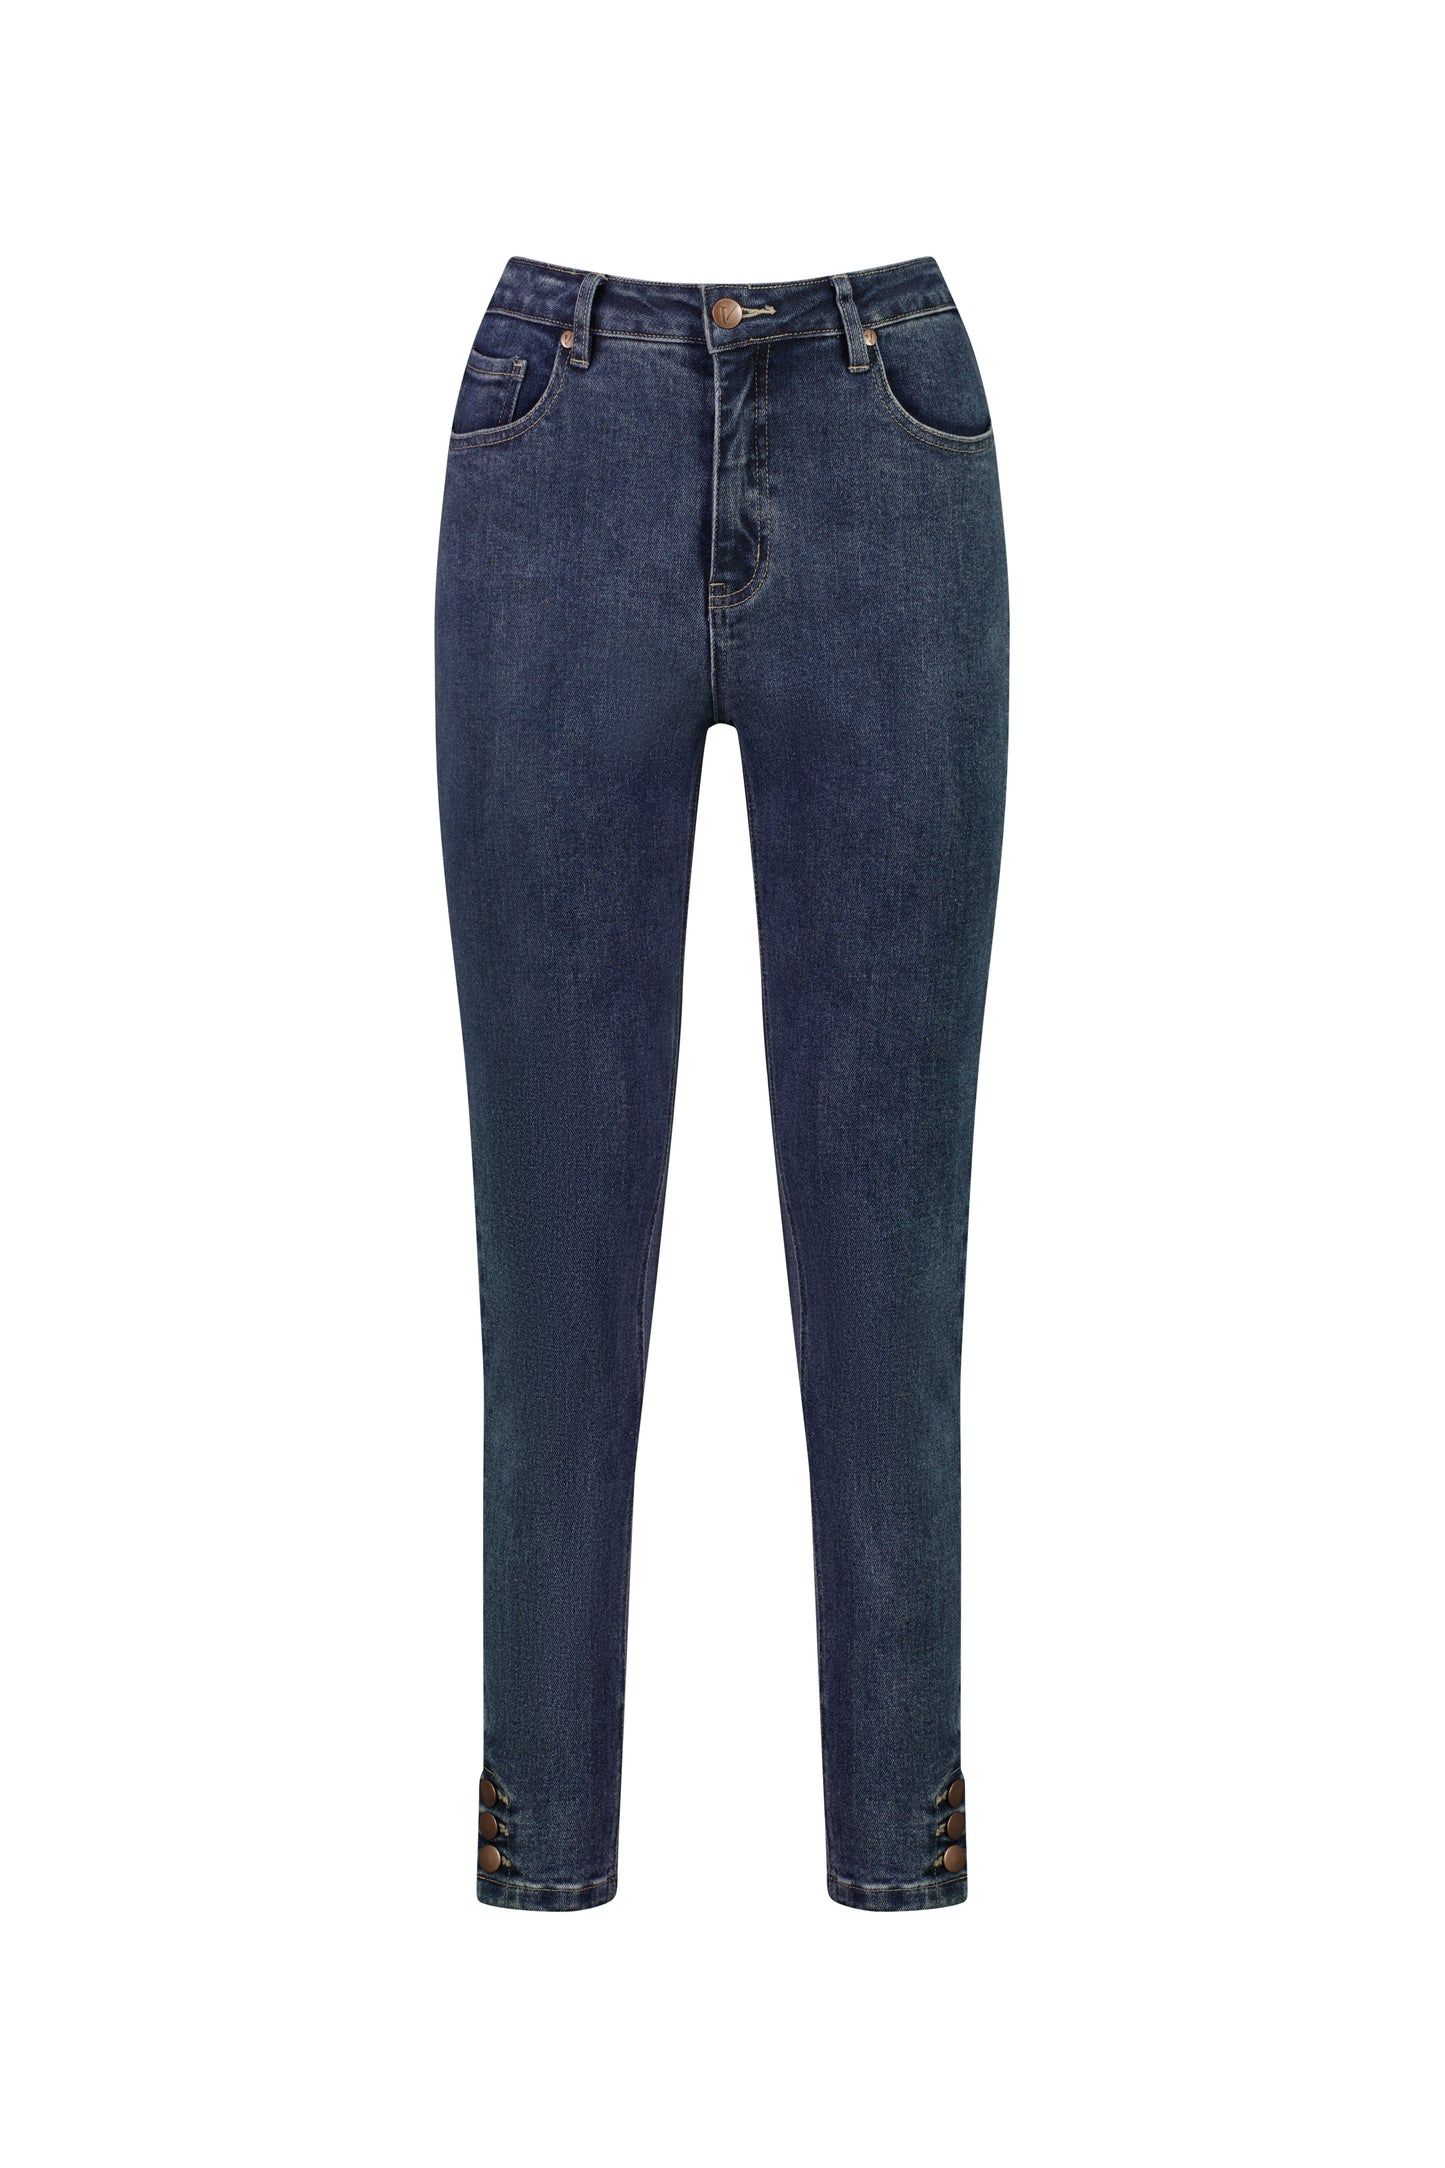 Vassalli - 5947 Ankle Grazer Jeans with Cuff Button - Indigo Wash INSTORE